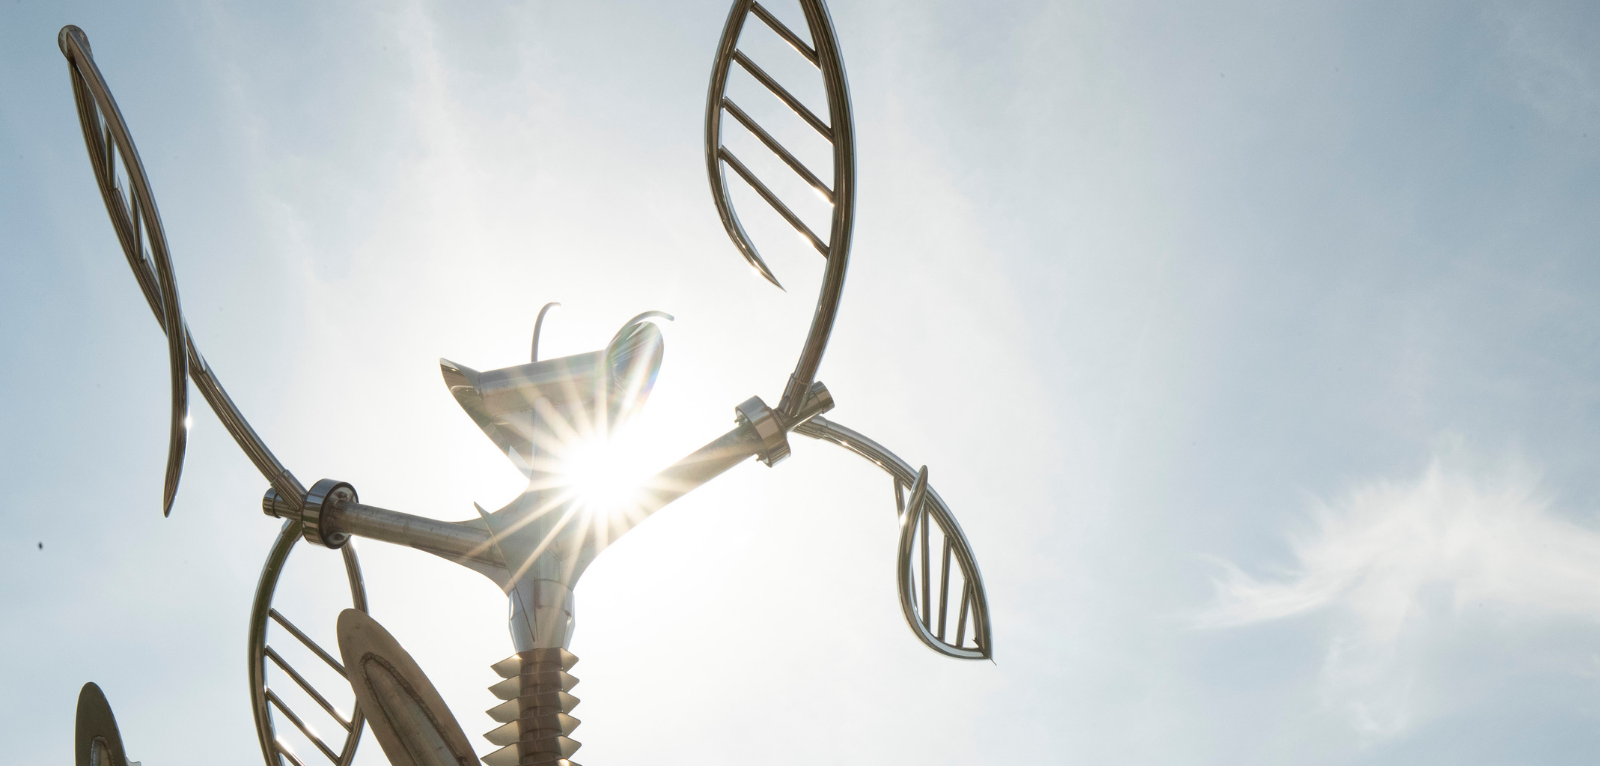 Metal sculpture of a Praying Mantis